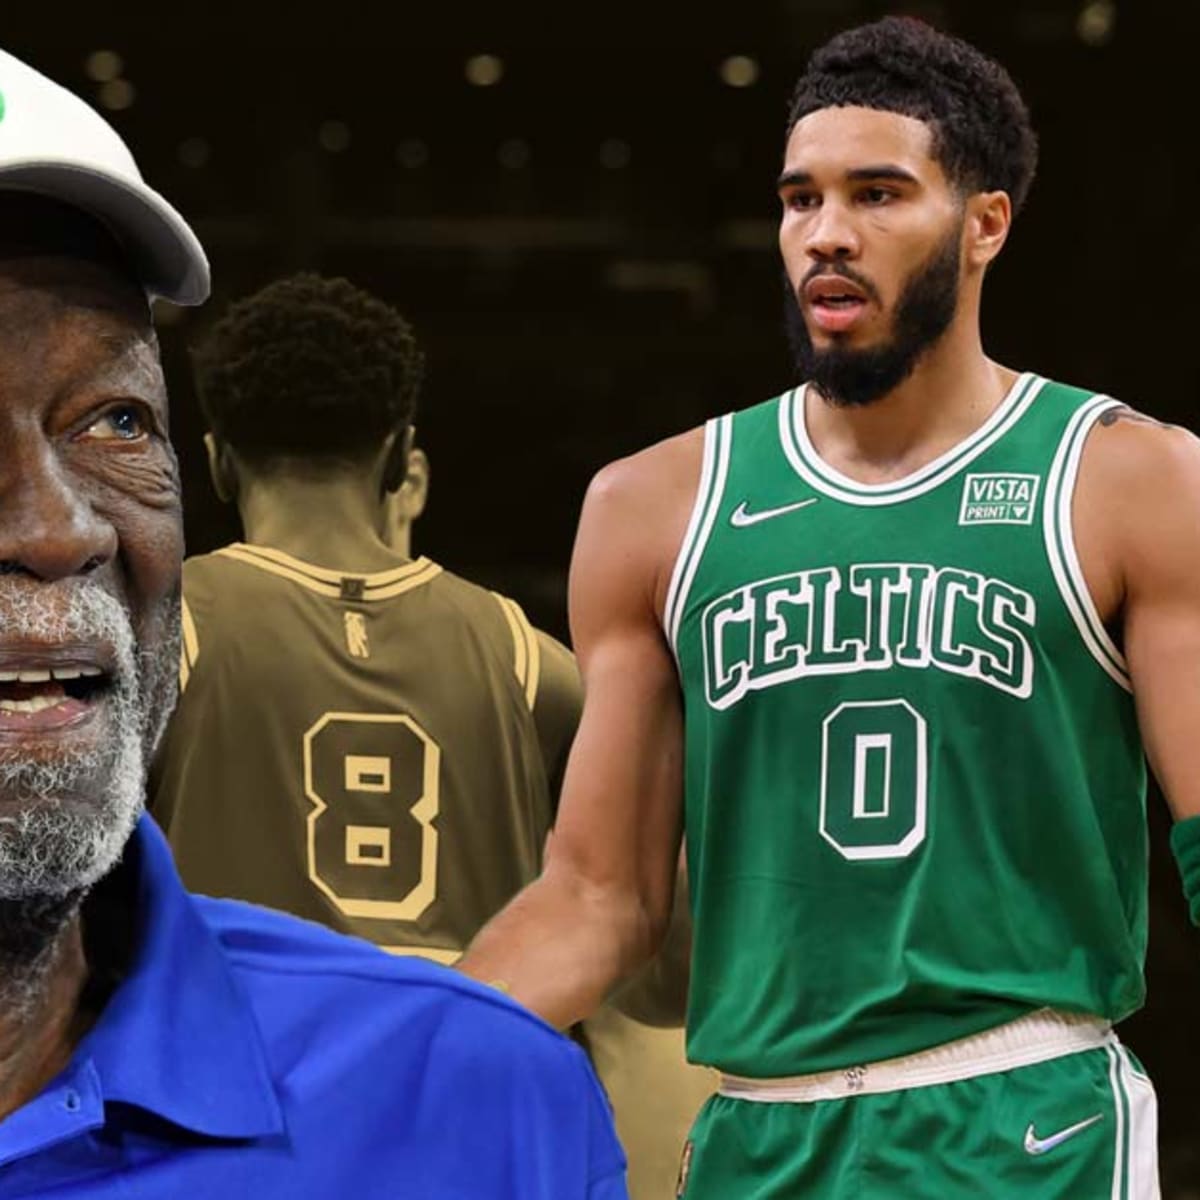 Celtics' Bill Russell alternate jerseys, explained: The det los